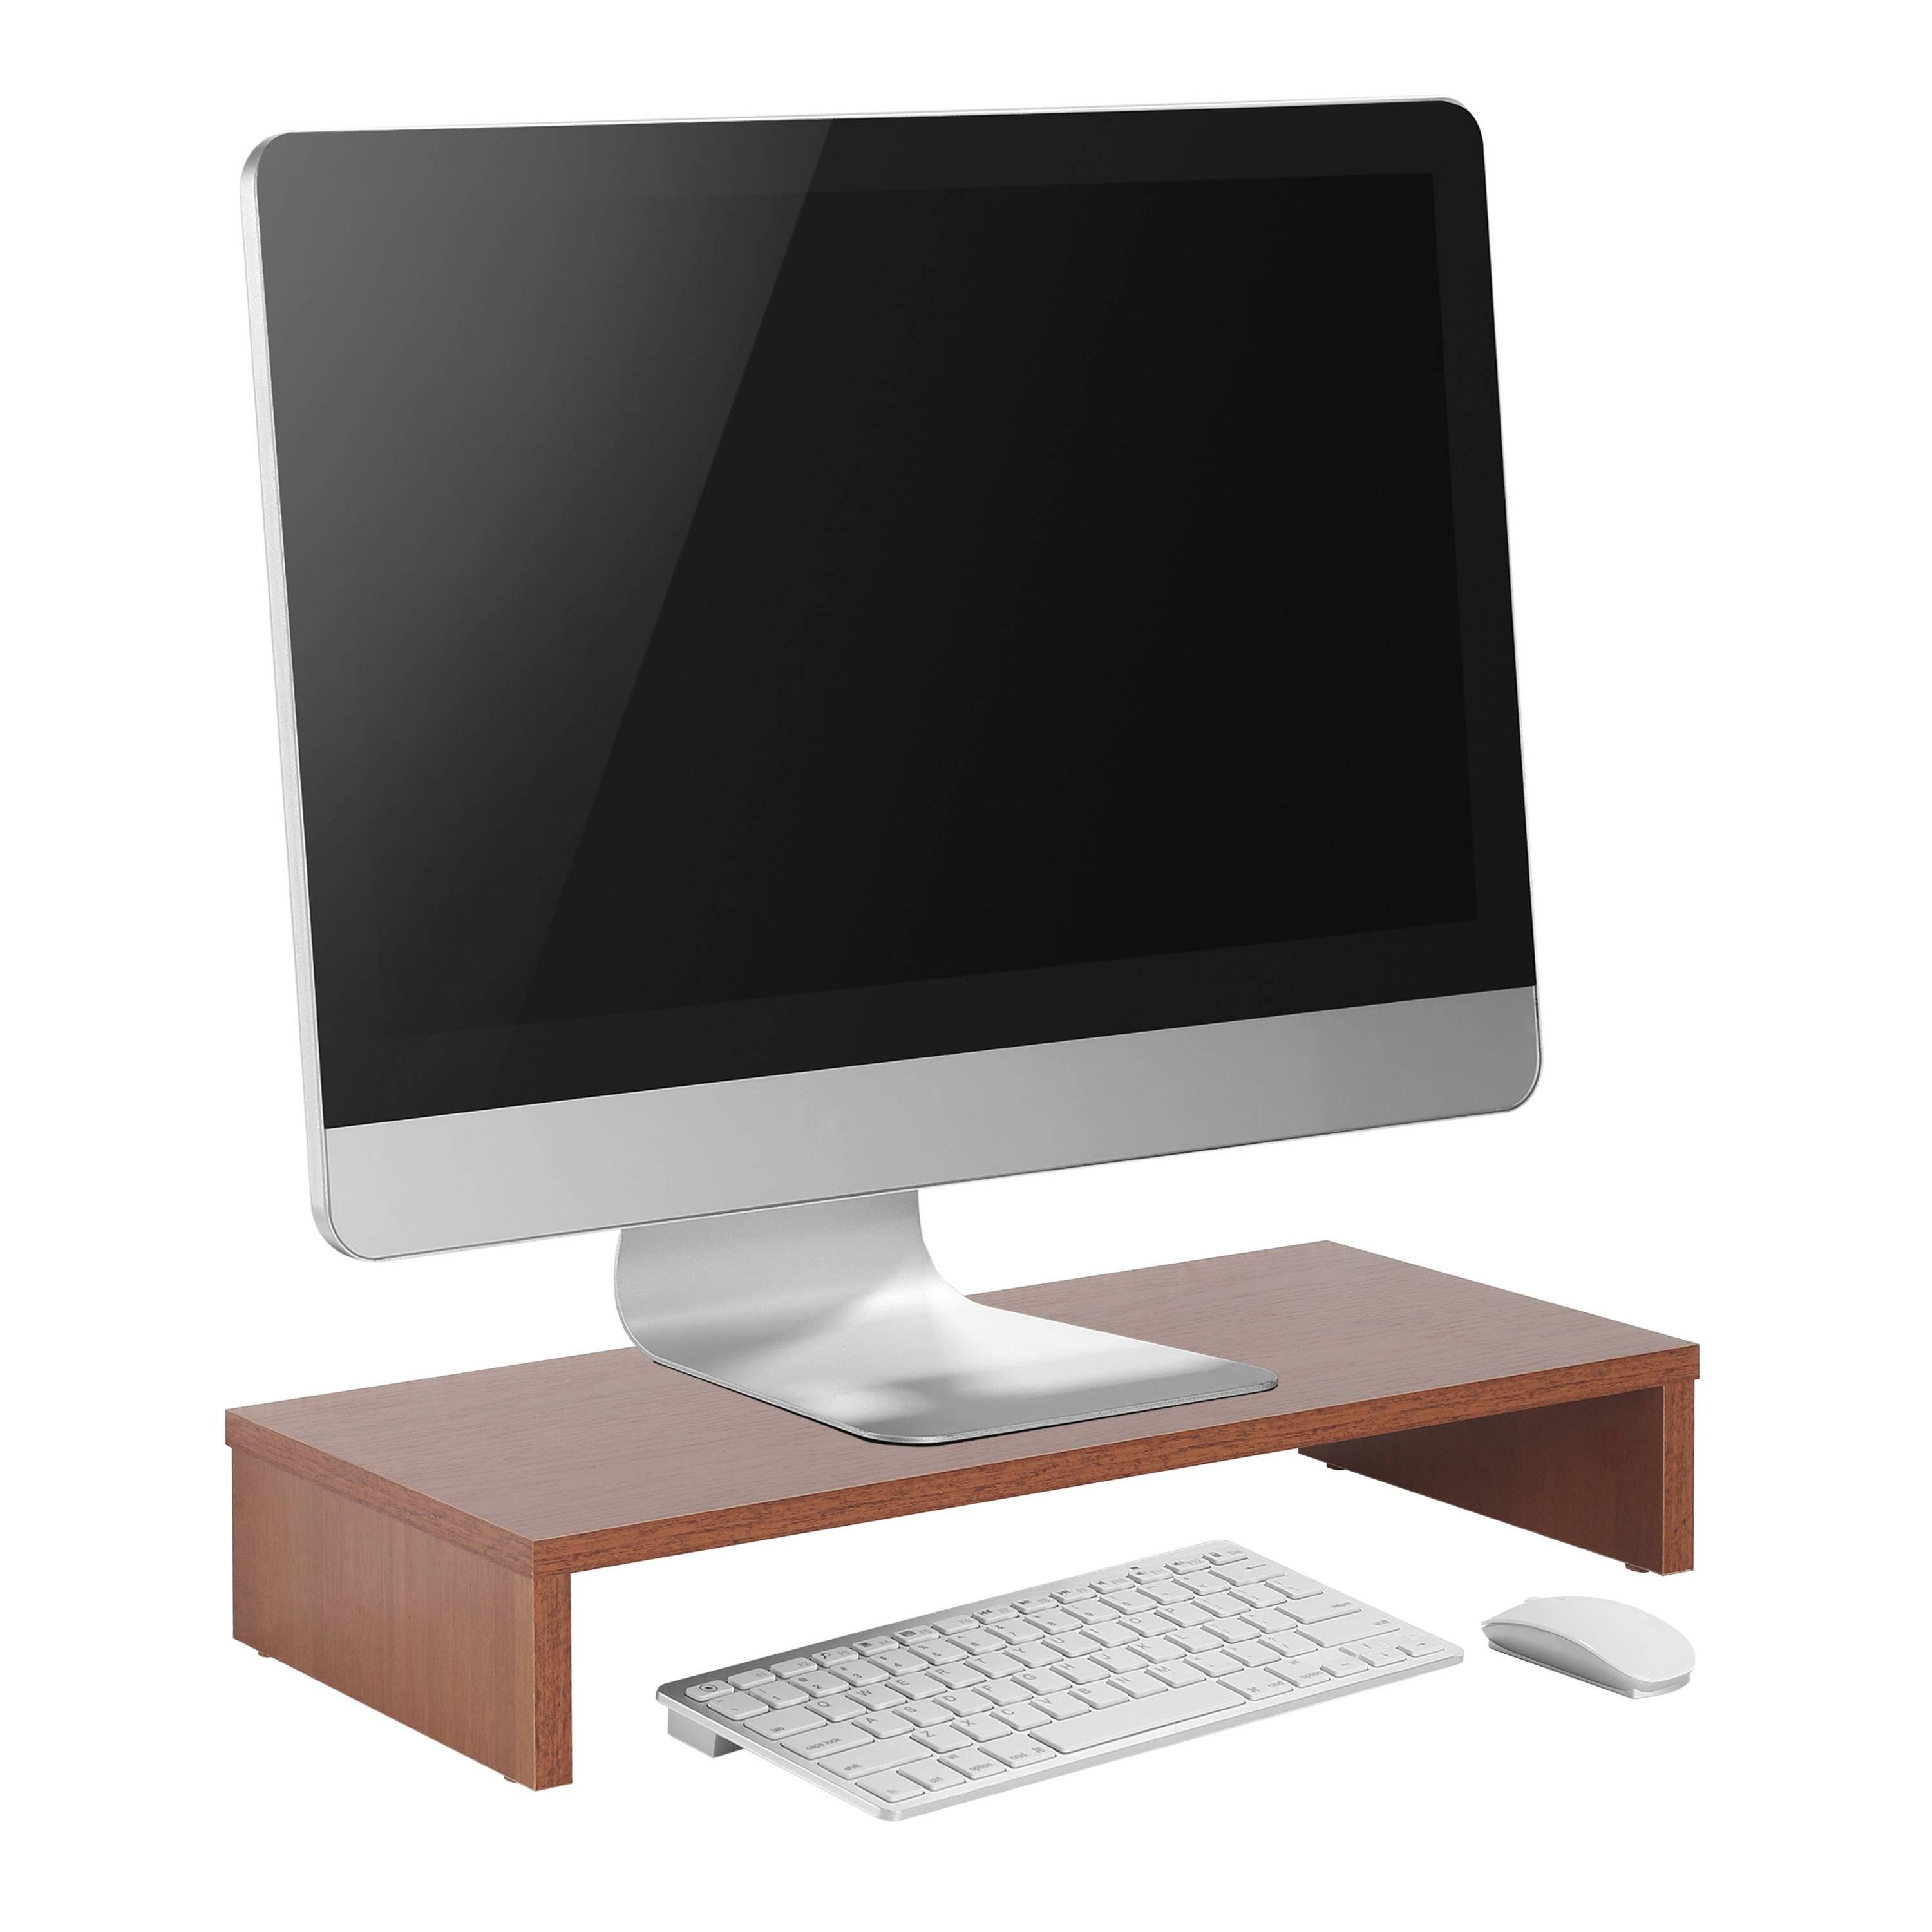 RICOO Schreibtischaufsatz FS0113-ER, Aufsatz Bildschirm Monitorerhöhung Tisch Monitorständer Eiche-Rustikal Schreibtisch